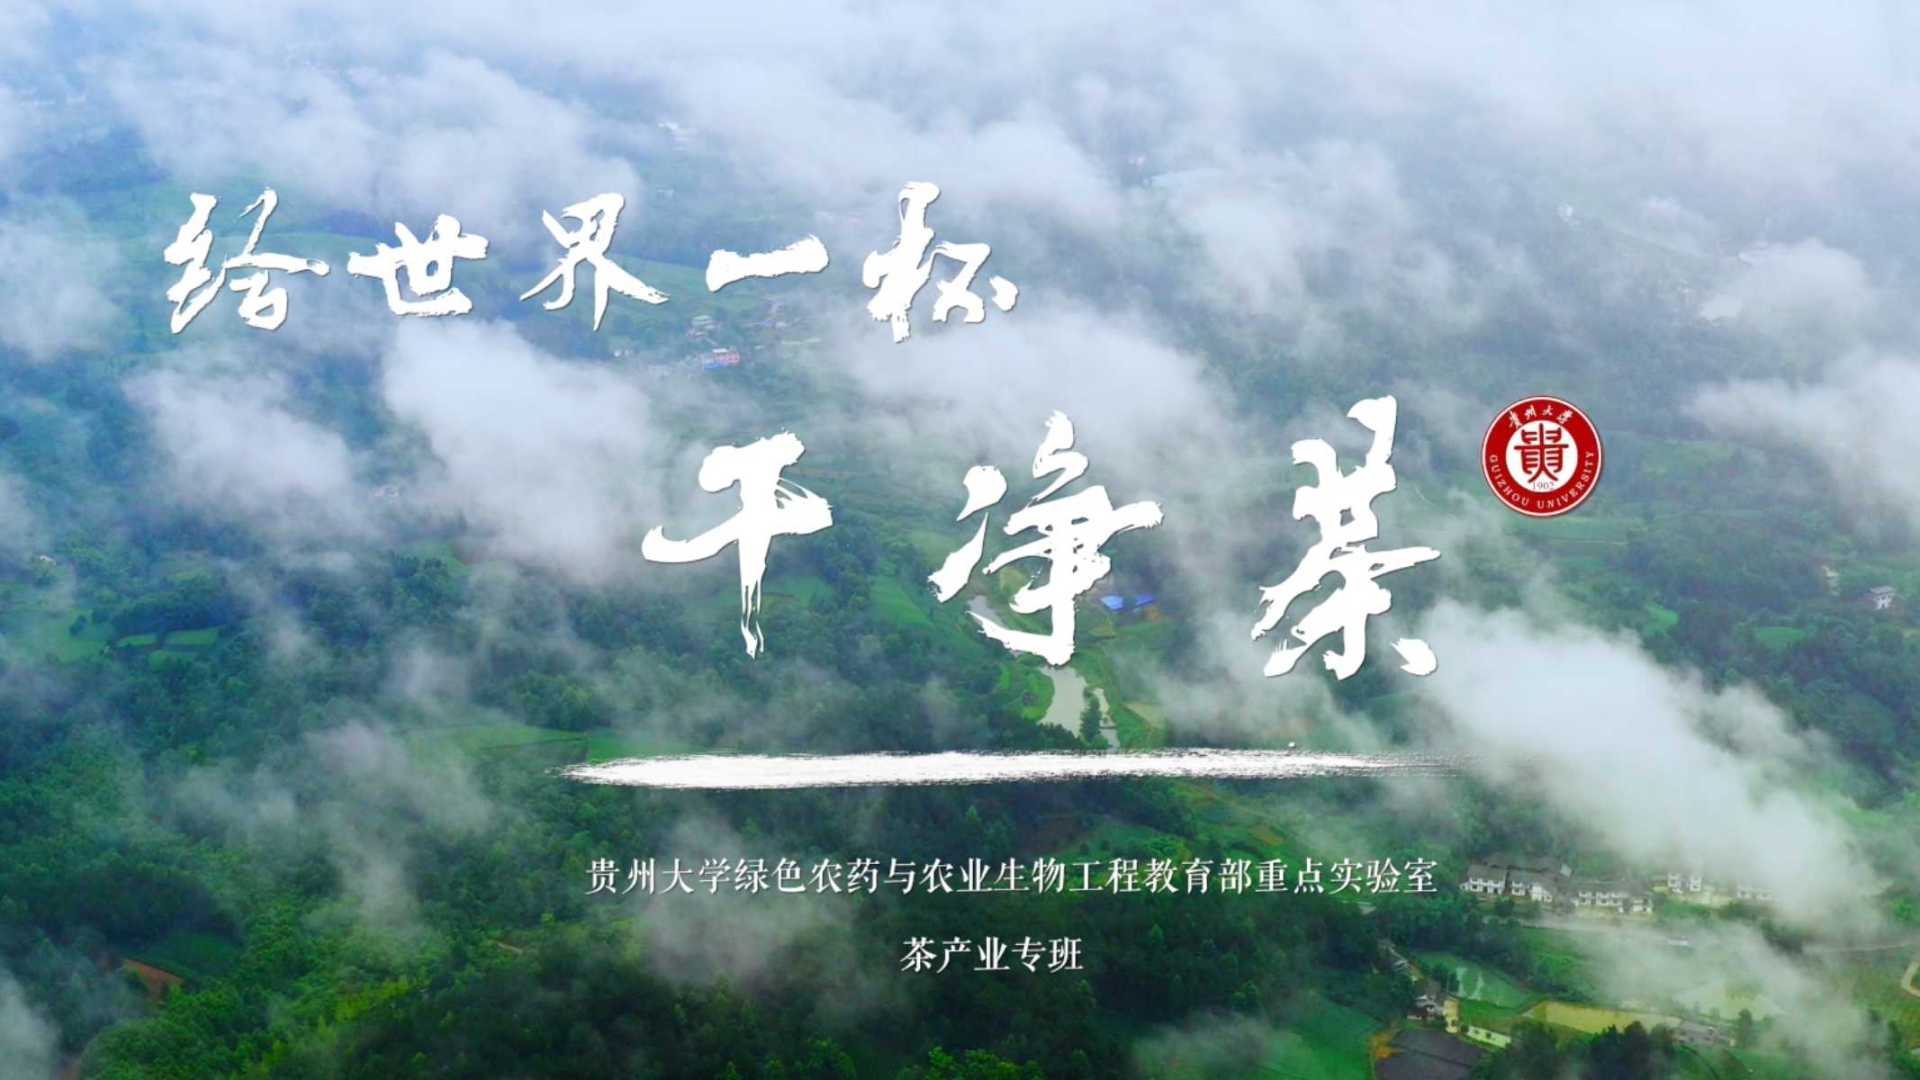 《给世界一杯干净茶》贵州大学茶产业宣传片